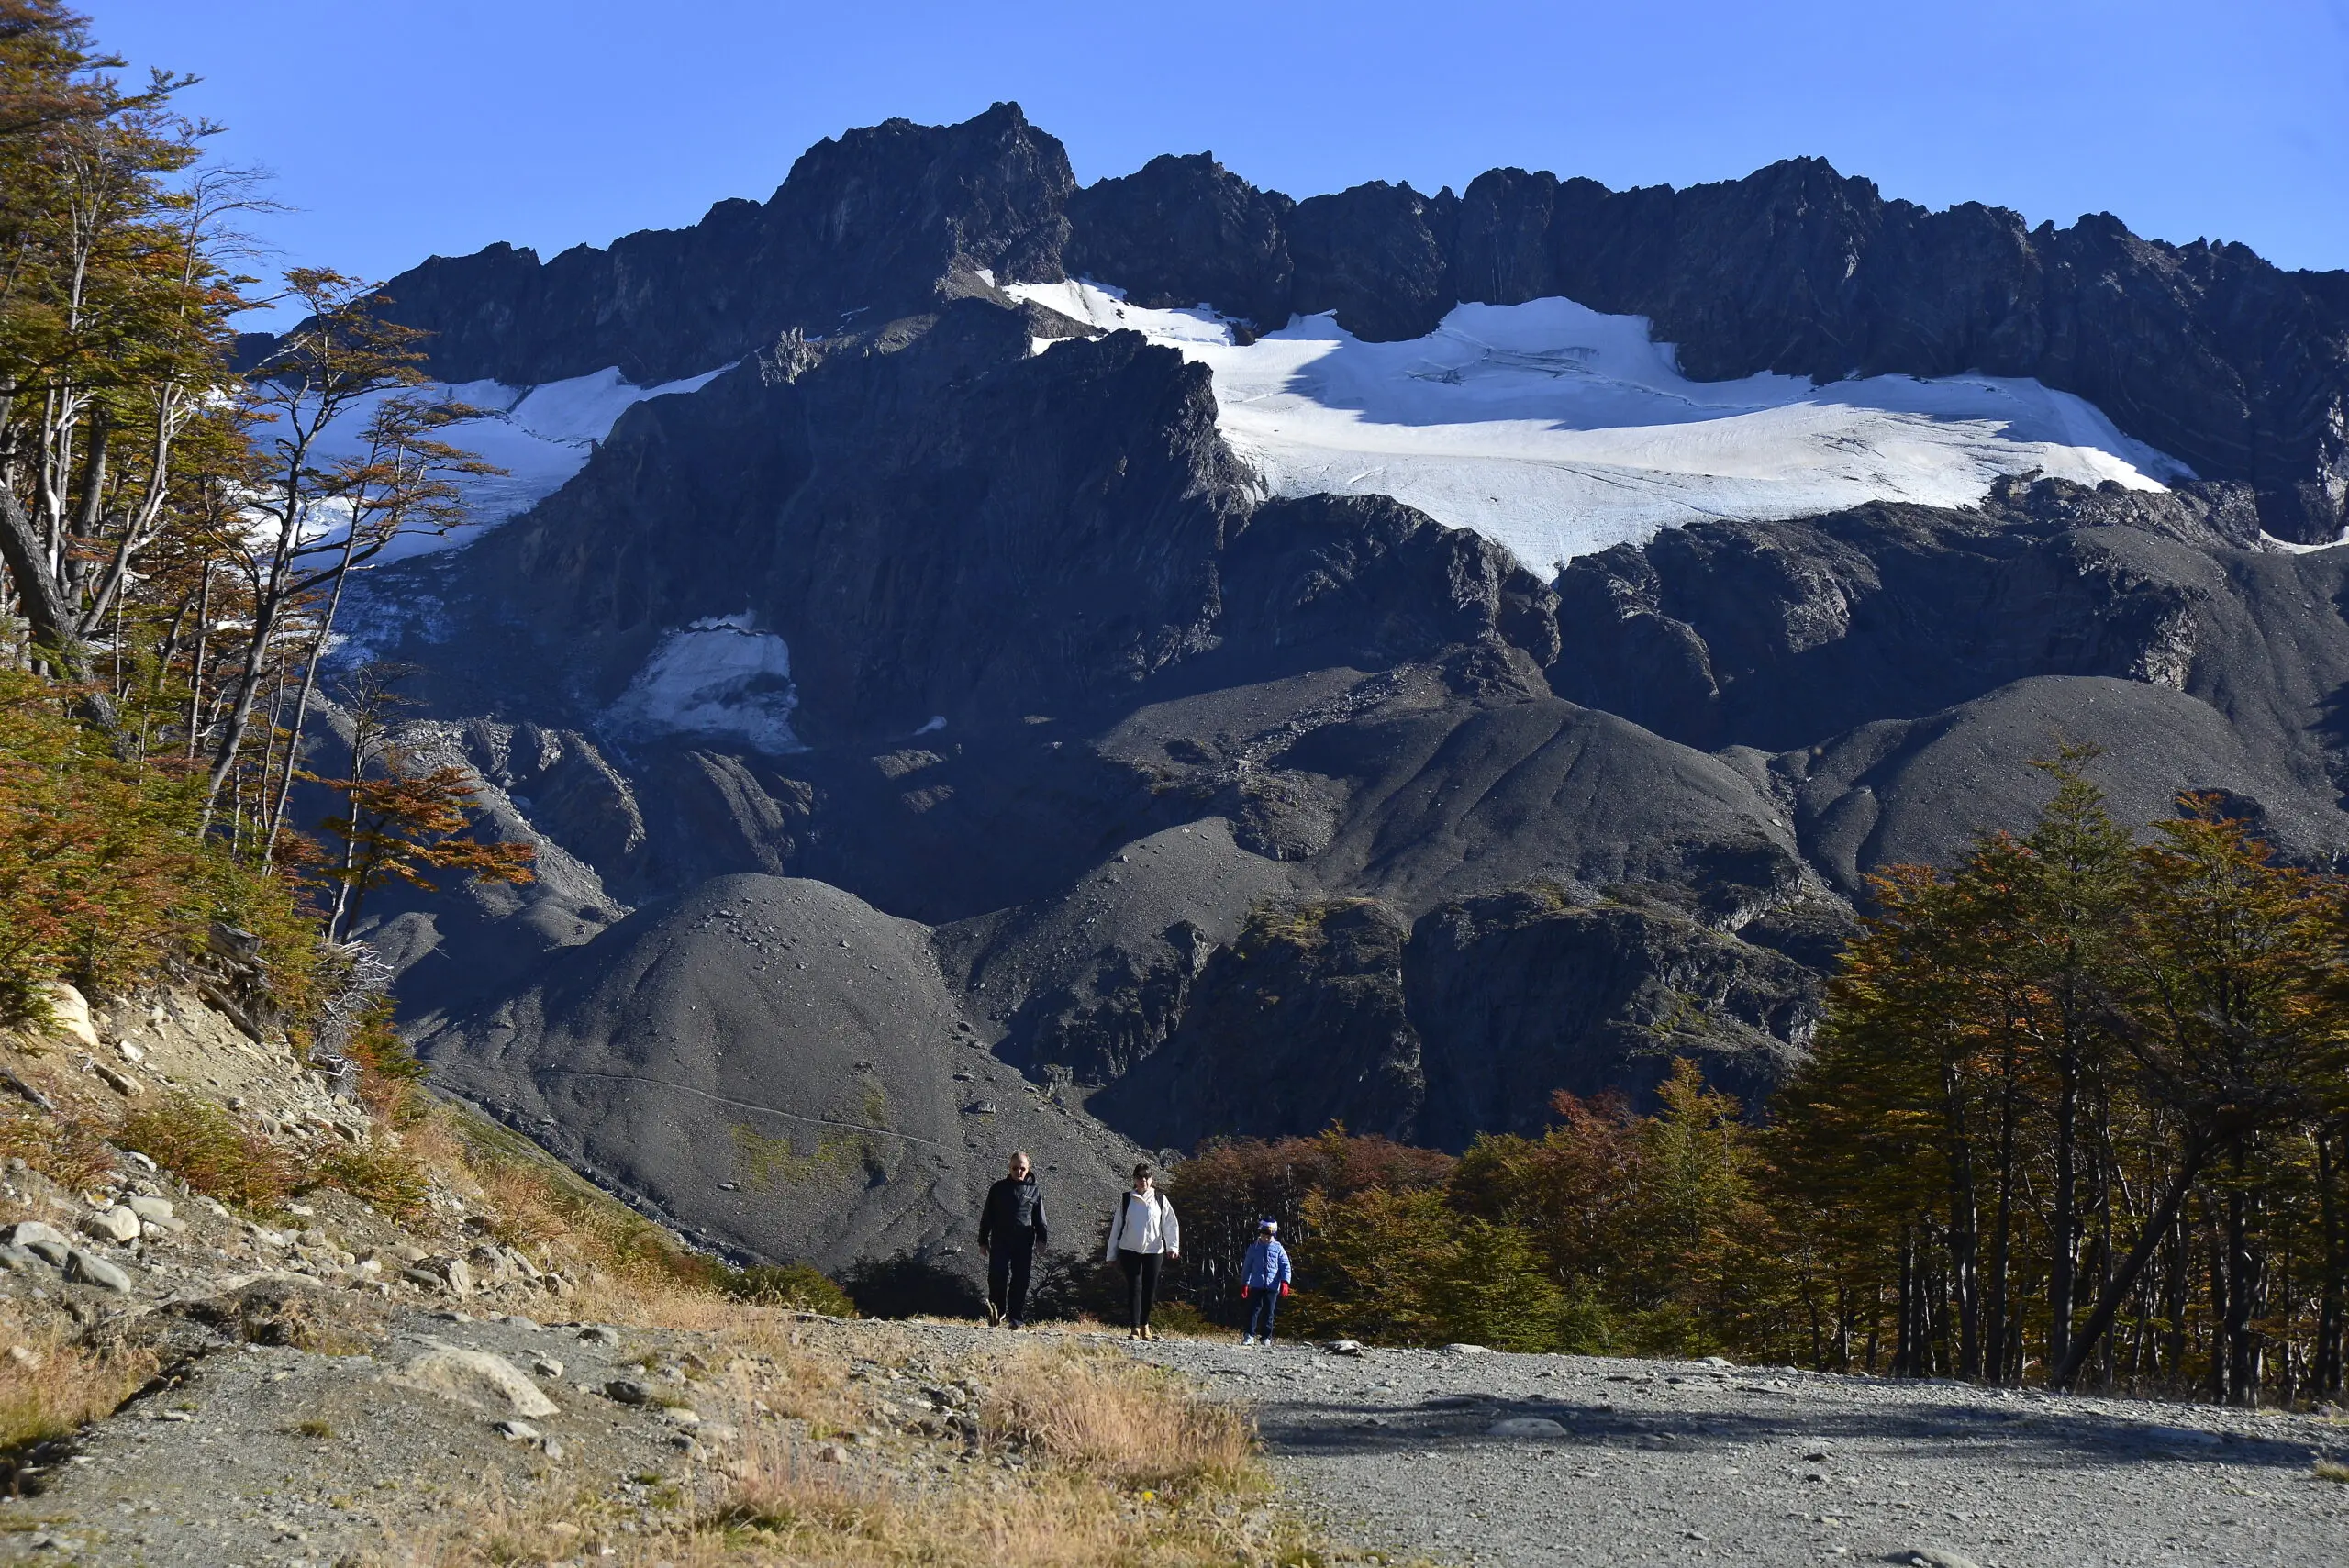 laguna de los tempanos - Qué glaciar hay en Ushuaia